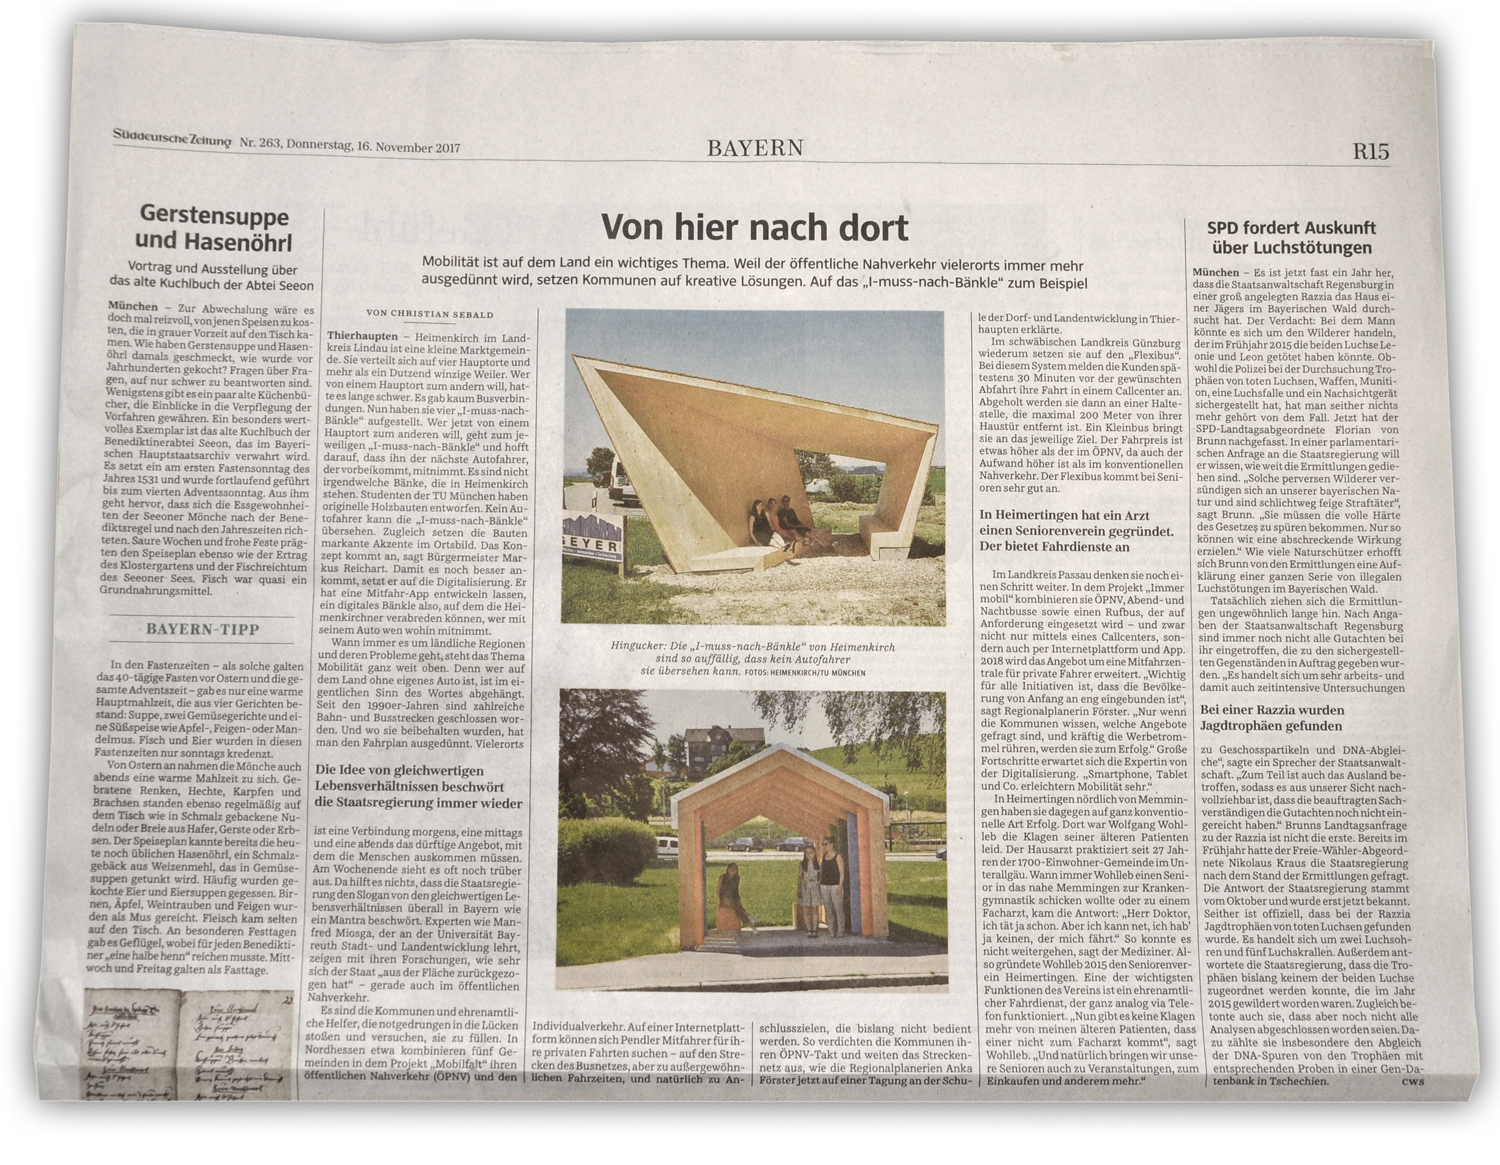 Fehlende Mobilität im ländlichen Raum - weiterhin ein großes Thema, das es zu lösen gilt. Ausschnitt Süddeutsche Zeitung, 16.11.2017